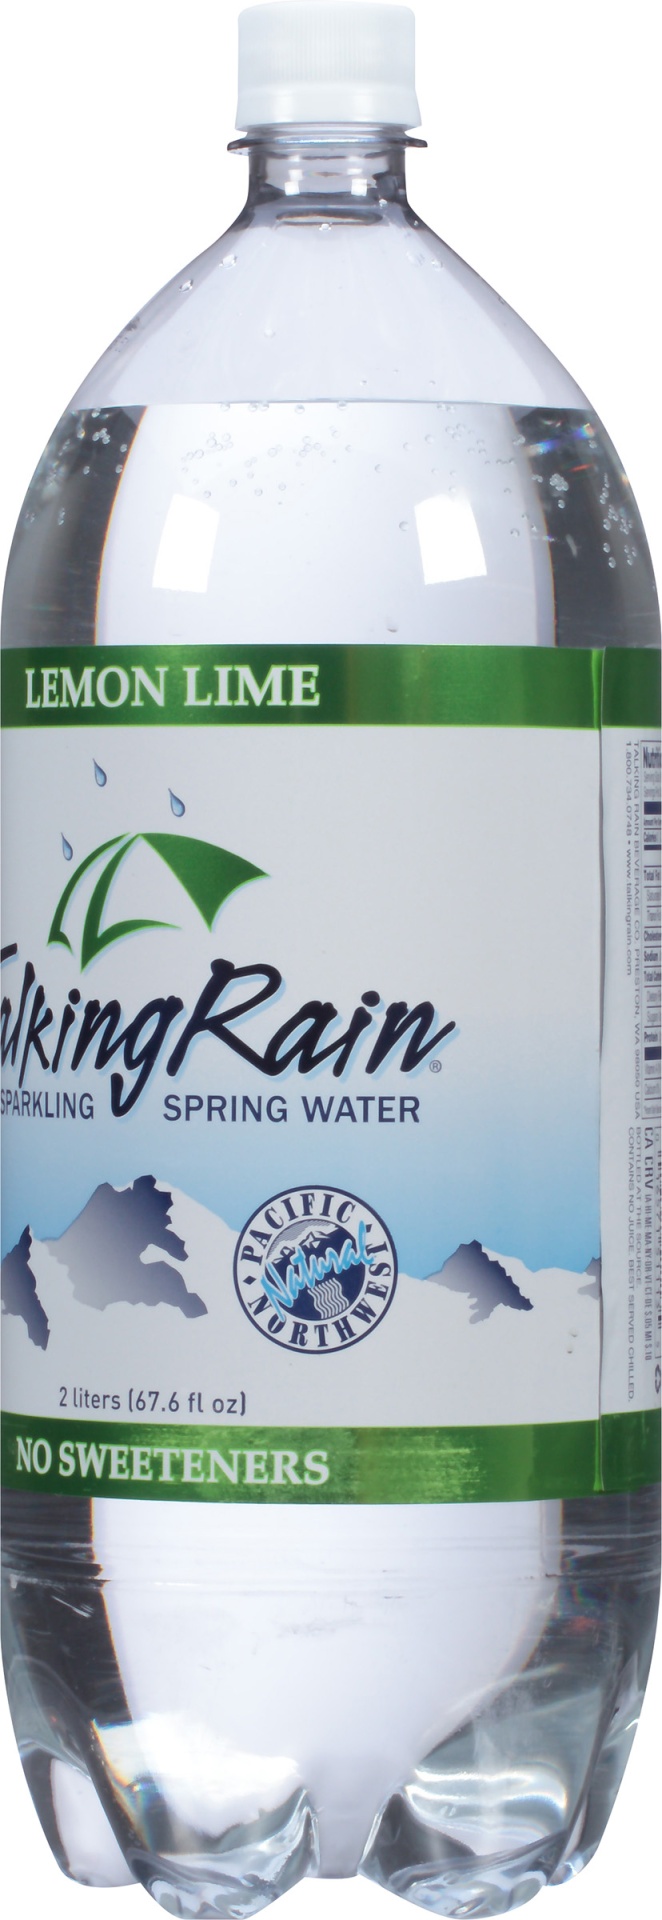 slide 4 of 6, Talking Rain Lemon-Lime Sparkling Water, 2 liter